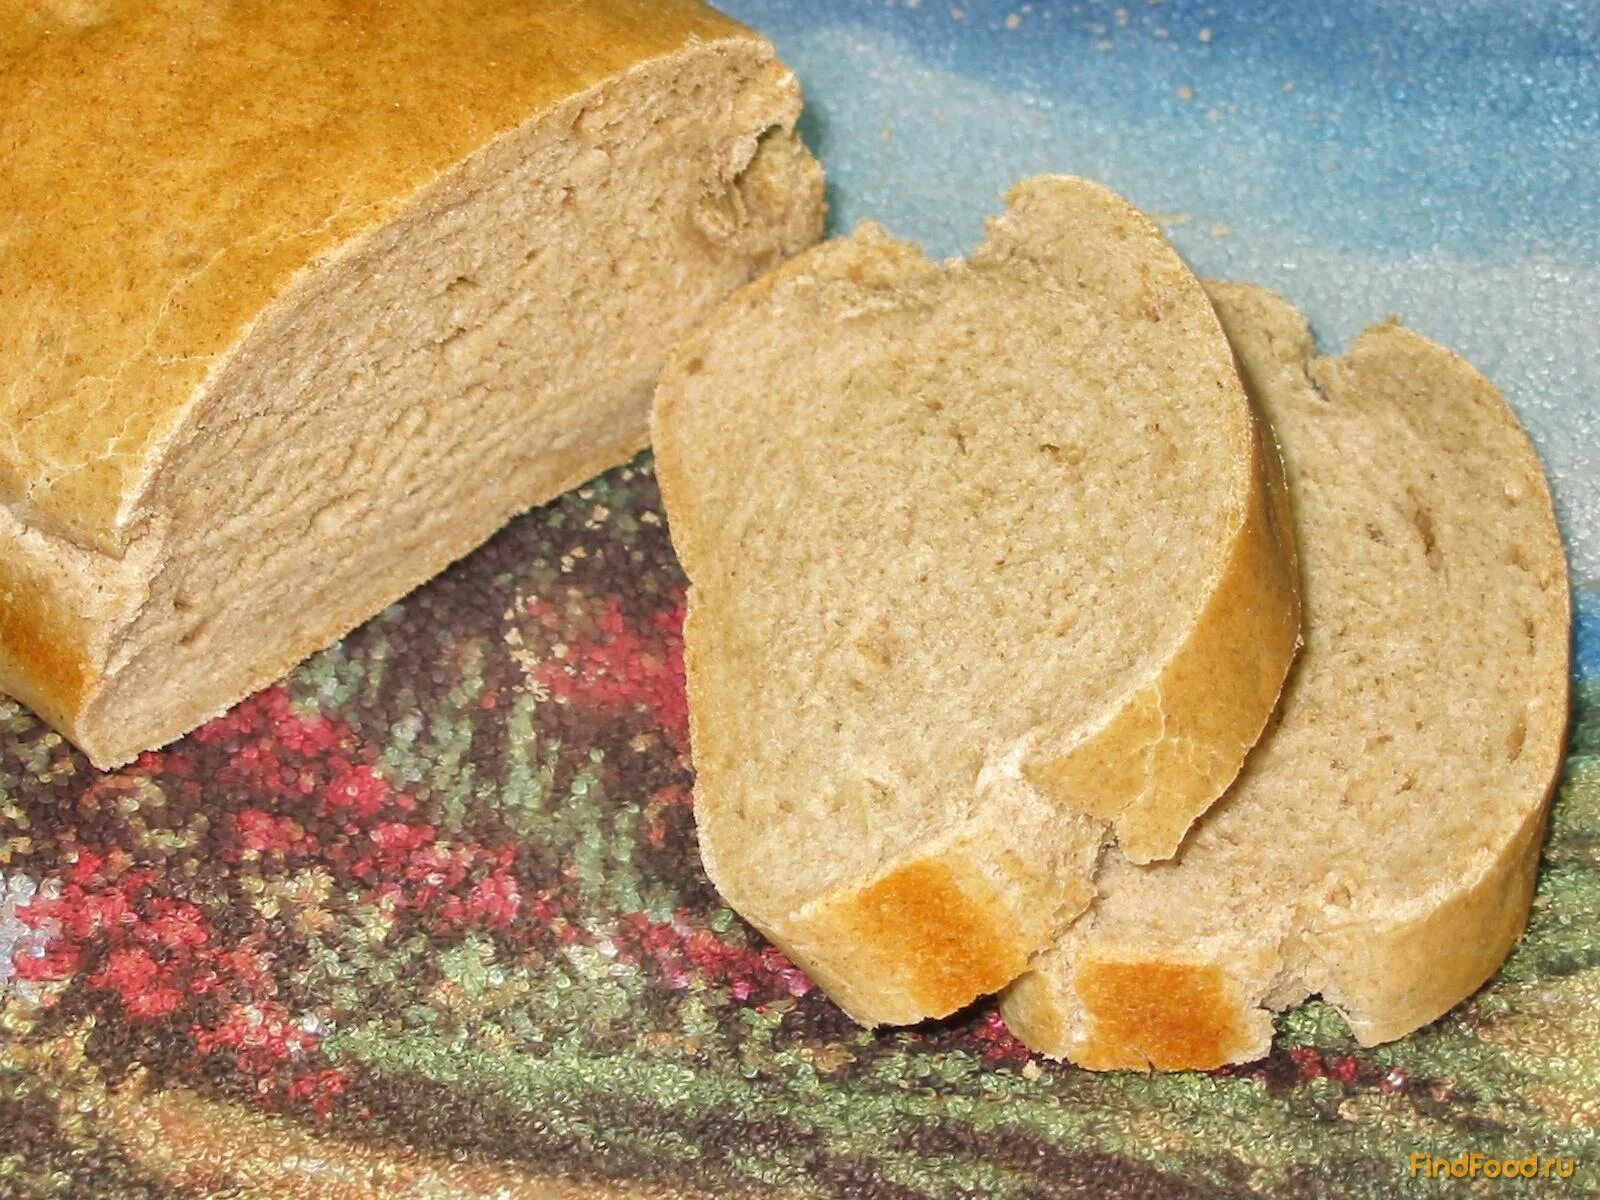 Хлеб пшеничный Булгаковский. Пшенично-ржаной хлеб. Ржано-пшеничный хлеб ржано-пшеничный хлеб. Ржаная мука хлеб. Пшеничное 1 рецепт